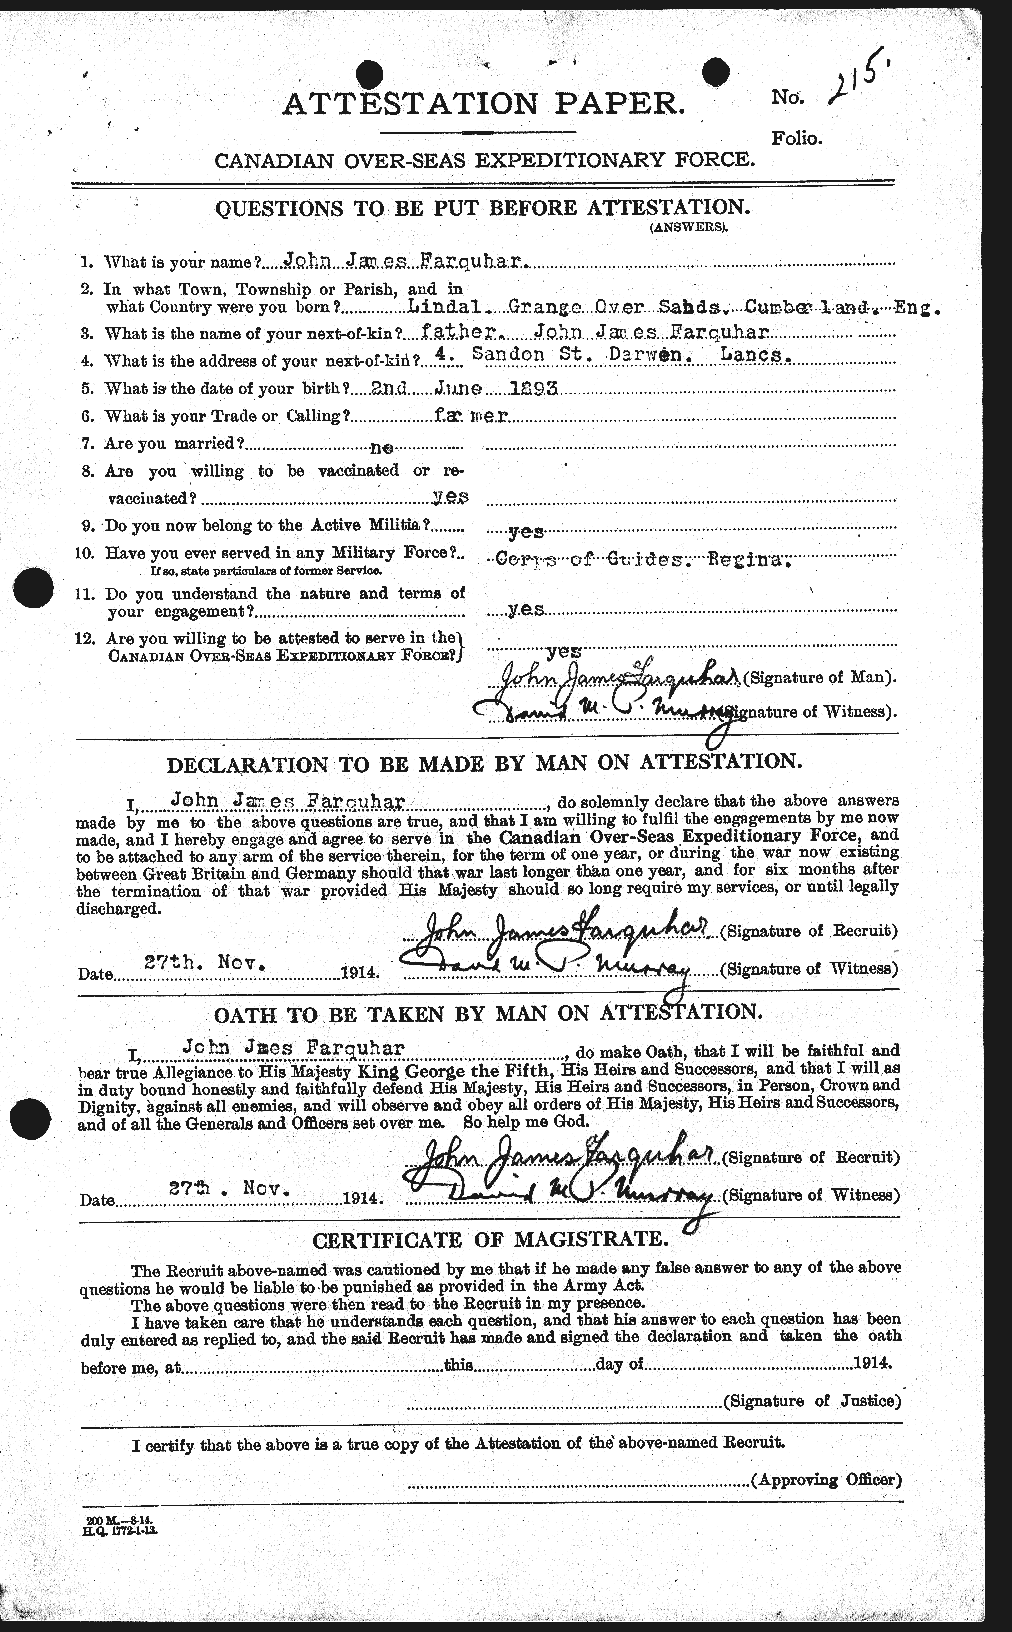 Dossiers du Personnel de la Première Guerre mondiale - CEC 318784a